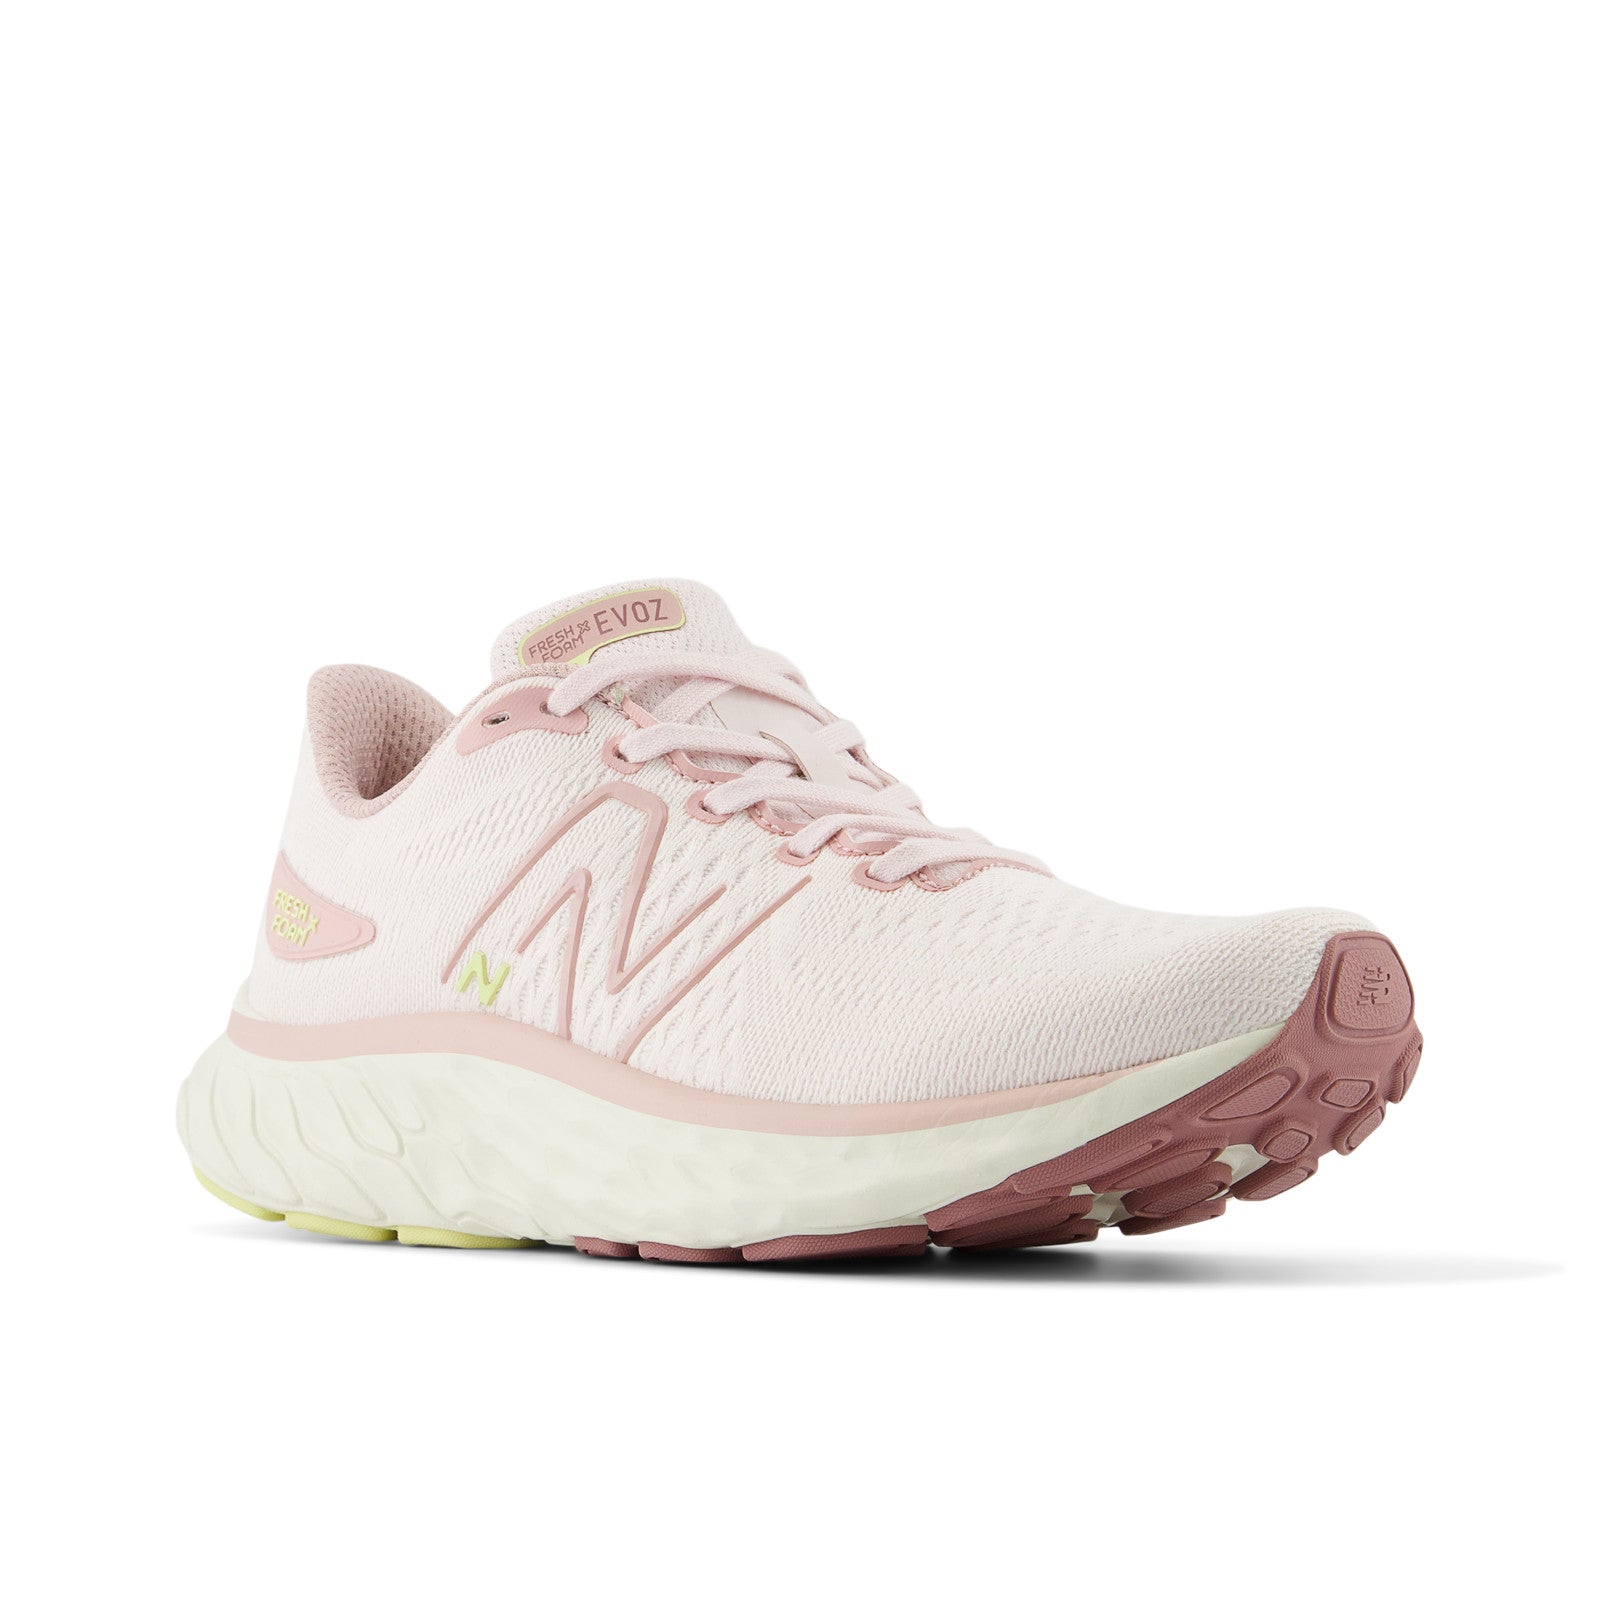 New Balance Women's Evoz Fresh Foamx Orb Pink  Running Shoes